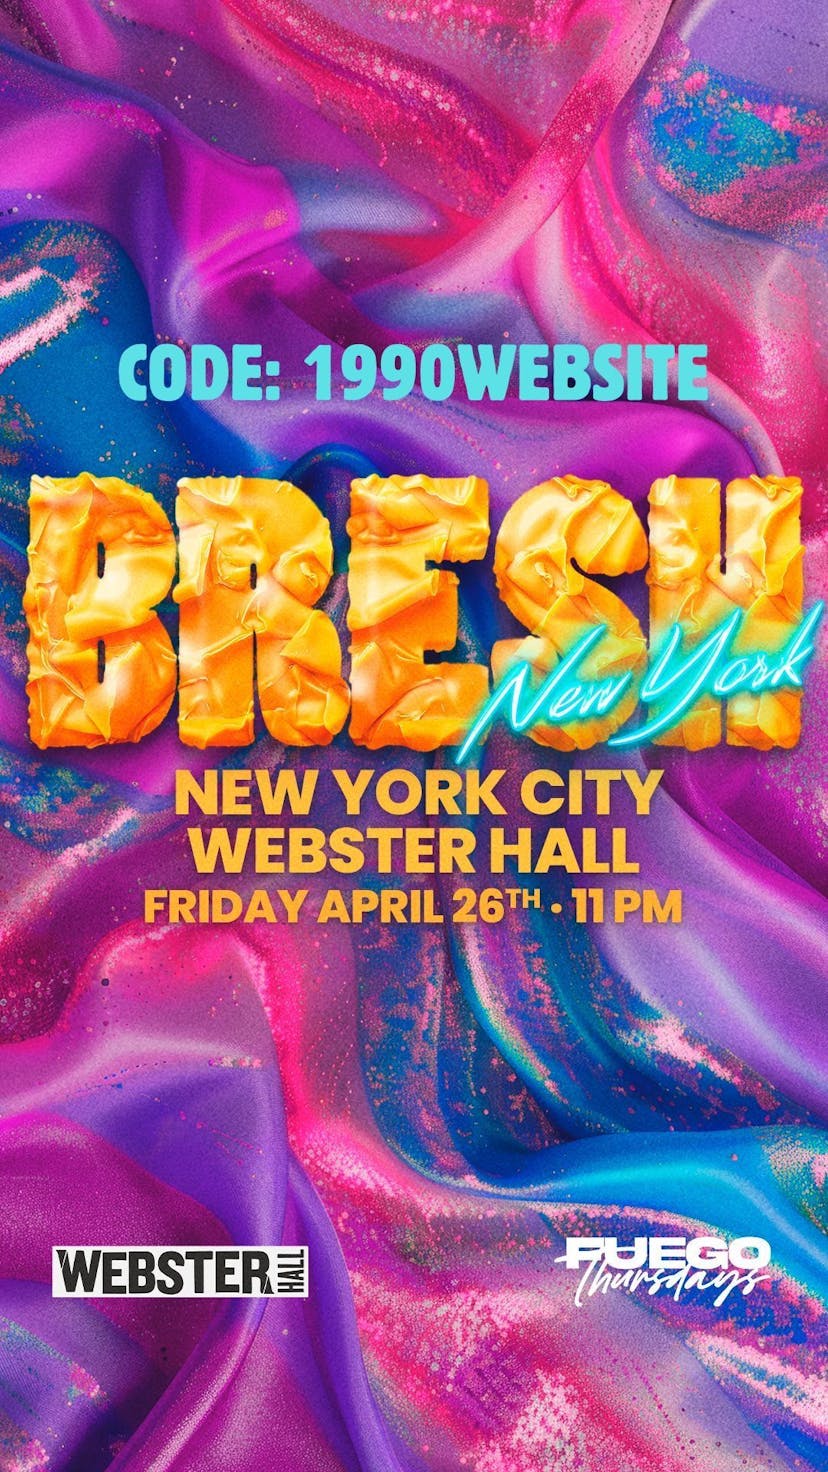 BRESH - Discount Code: 1990website